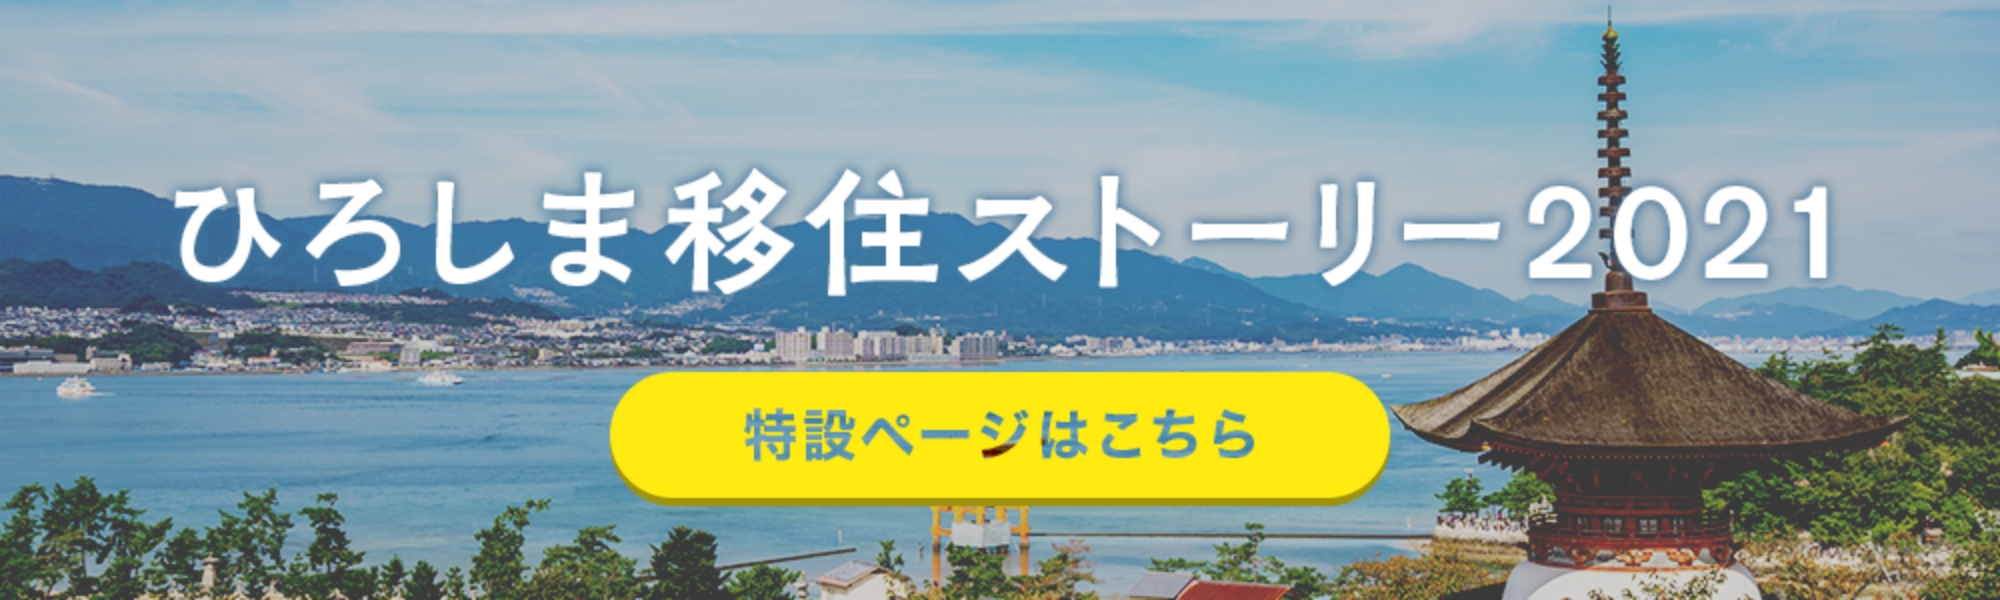 広島移住ストーリー2021 特設ページはこちら